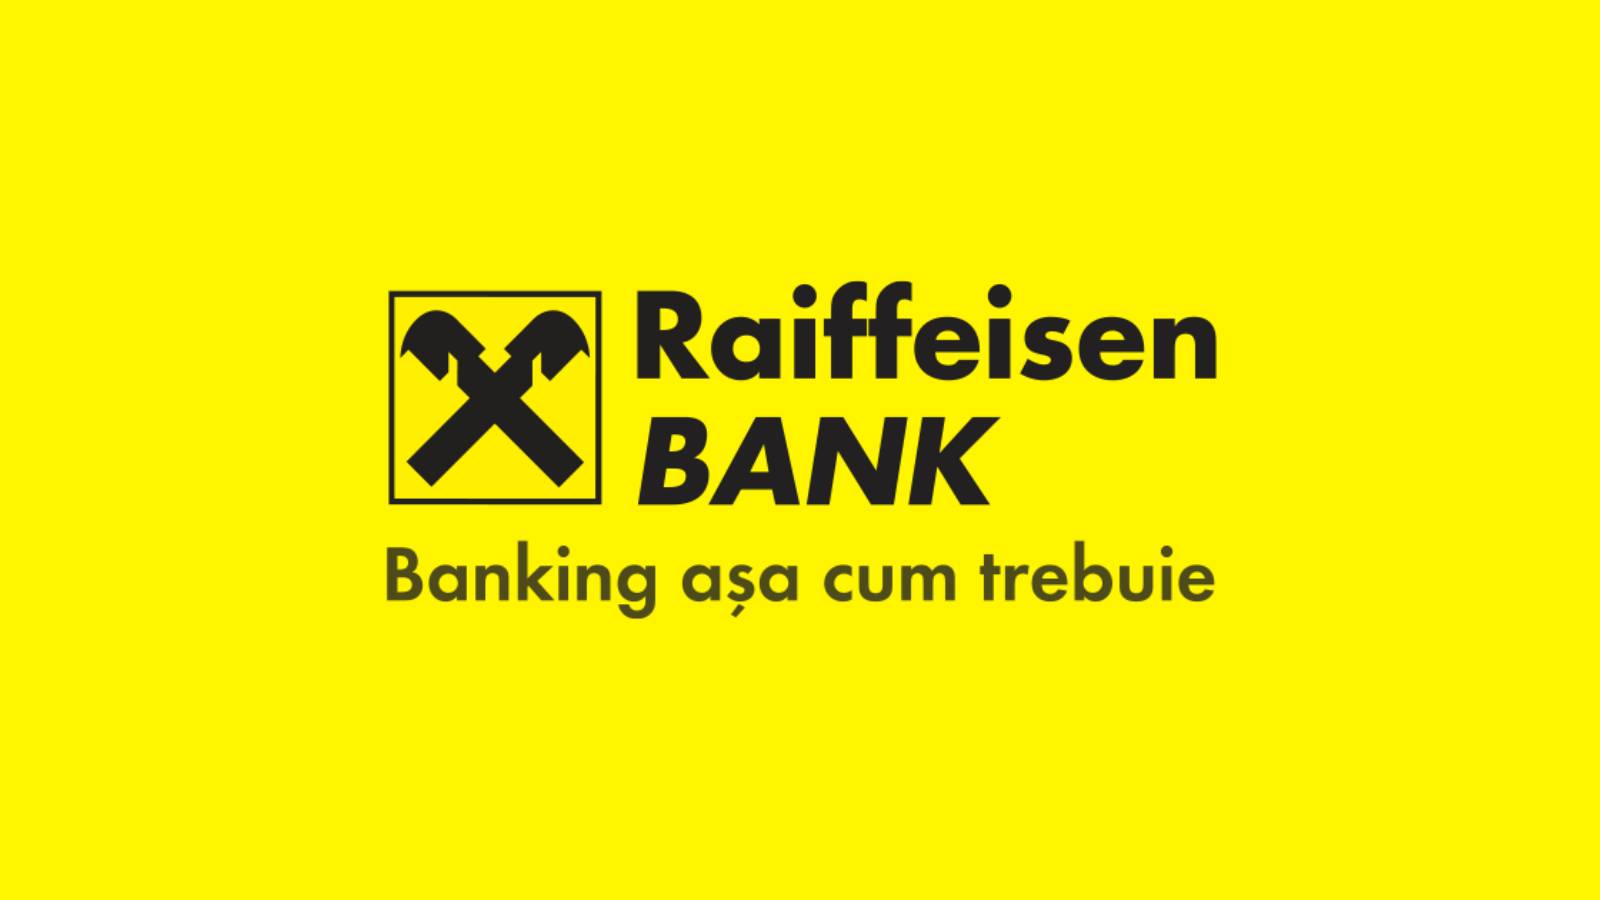 Raiffeisen Bank hastighed